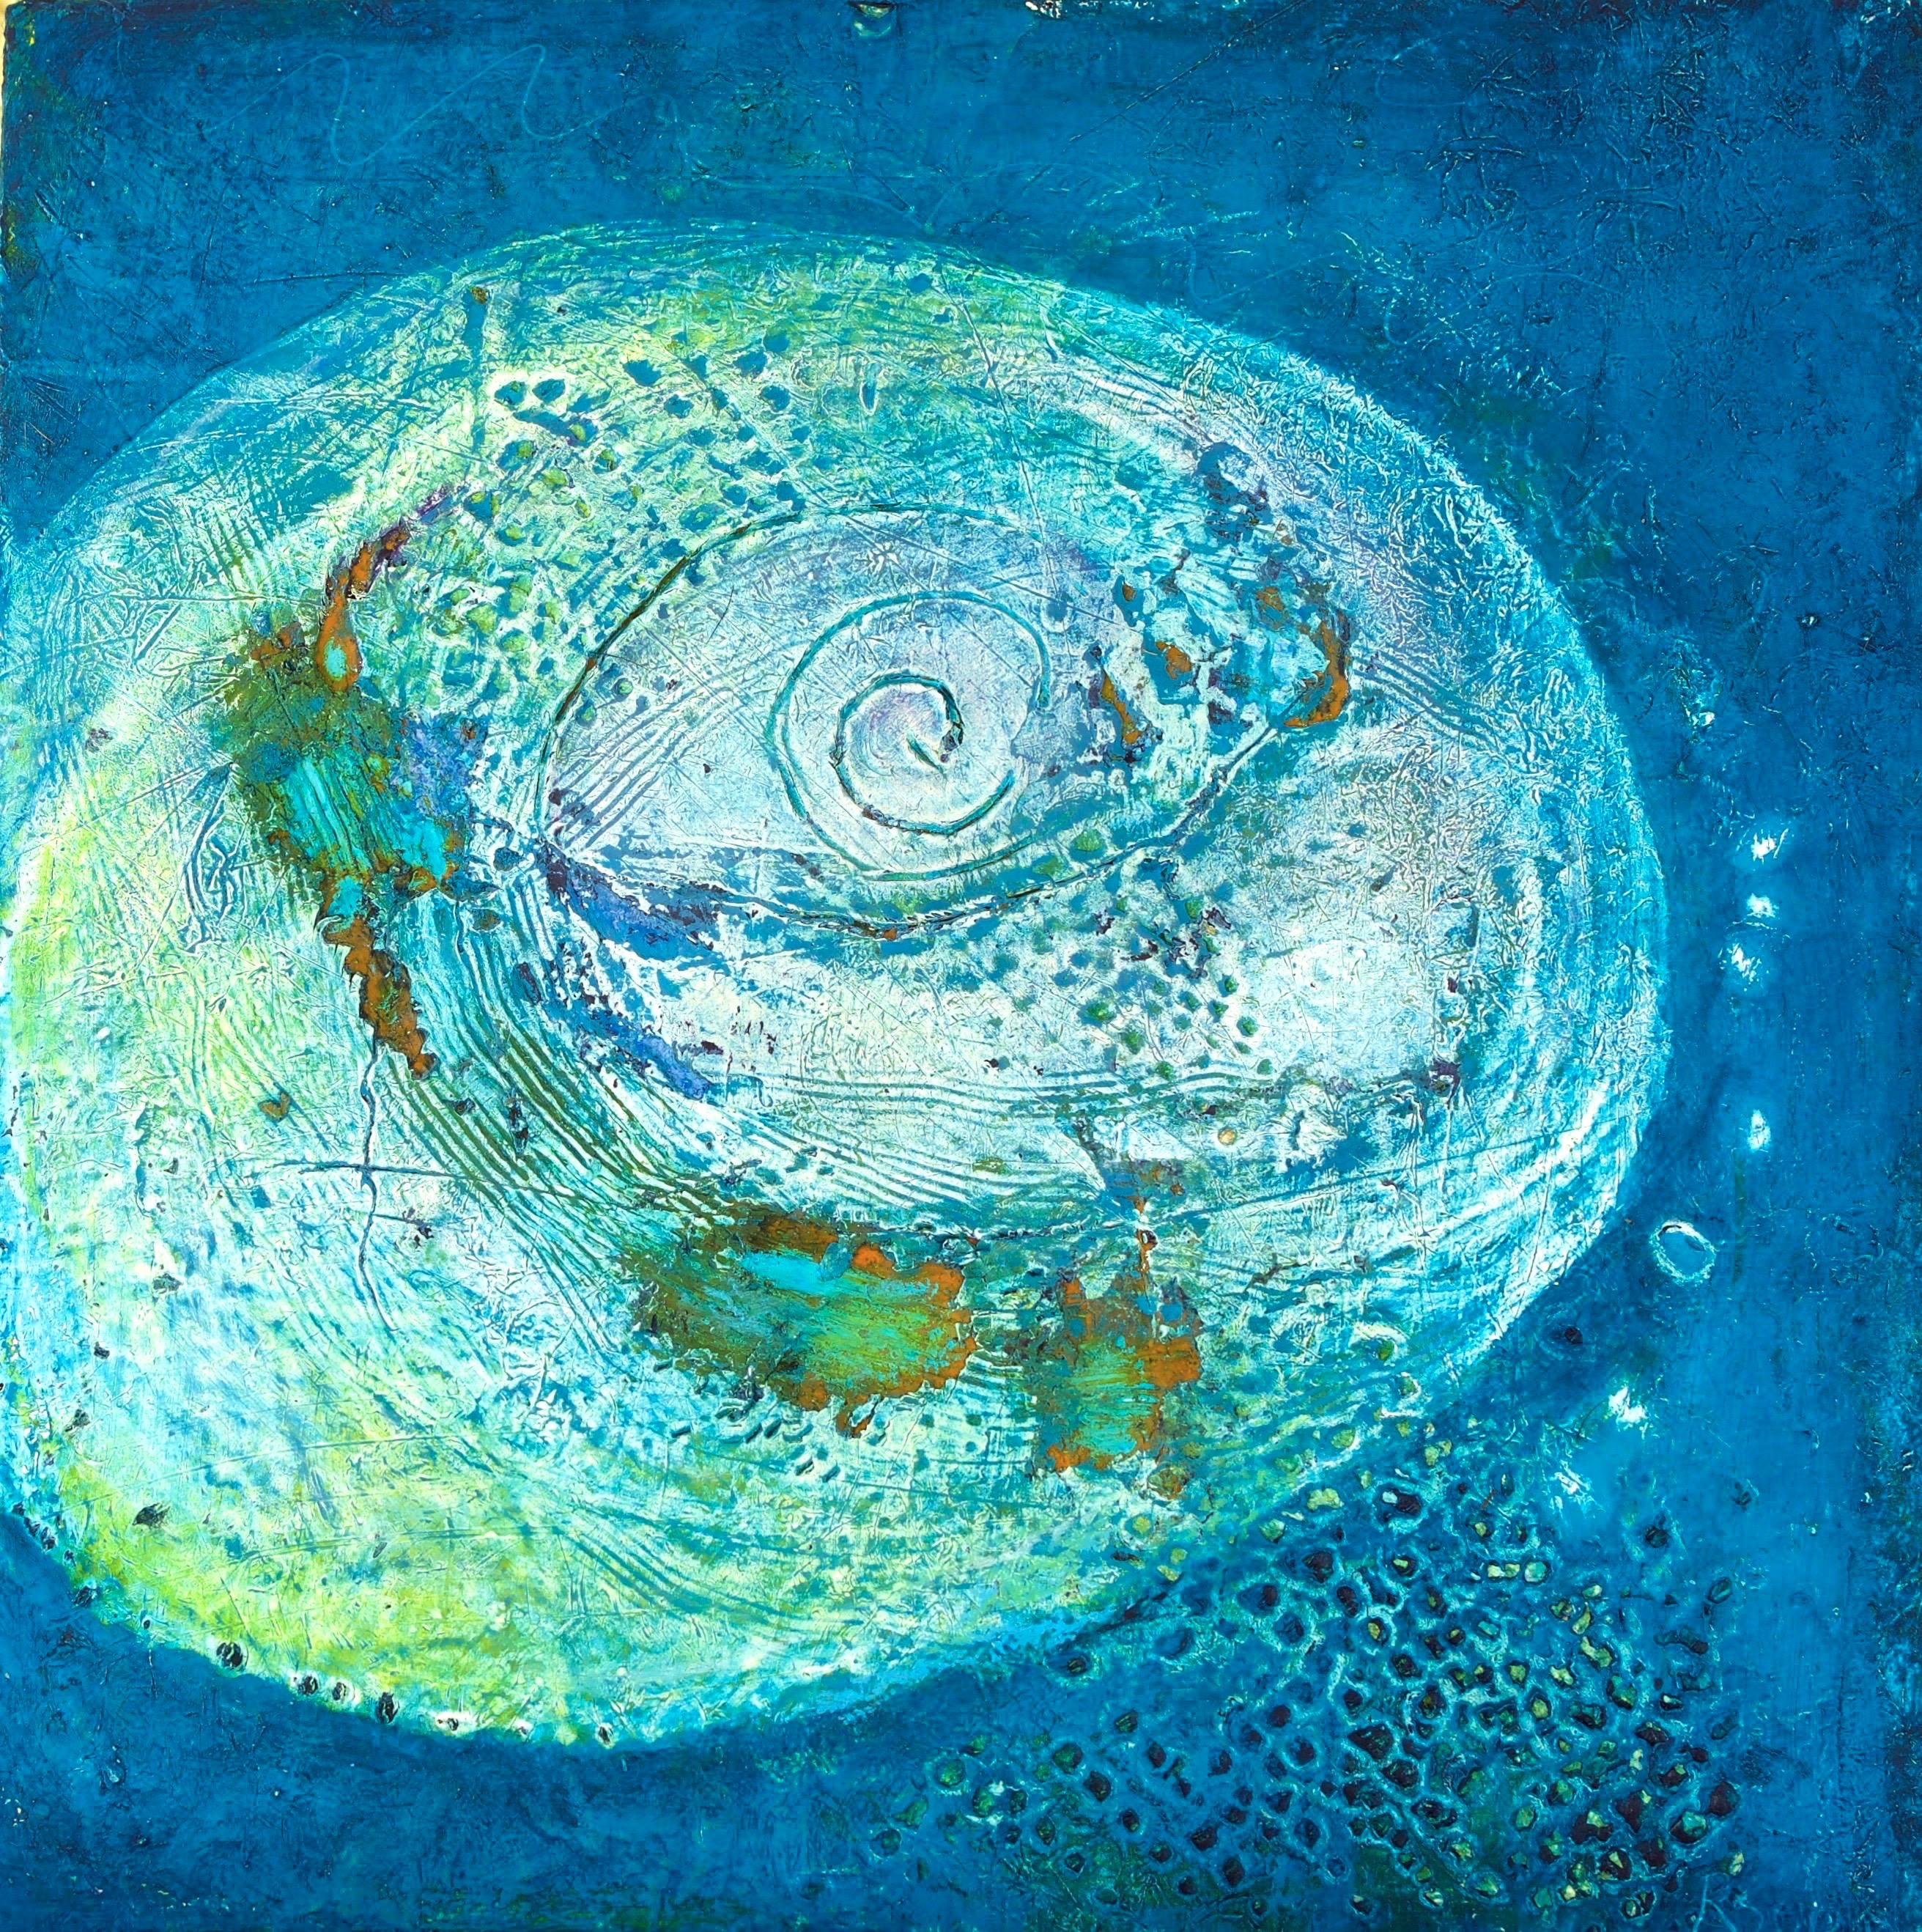 Abstract Painting Rebecca Sobin - Une fois dans une coquille de lune bleue